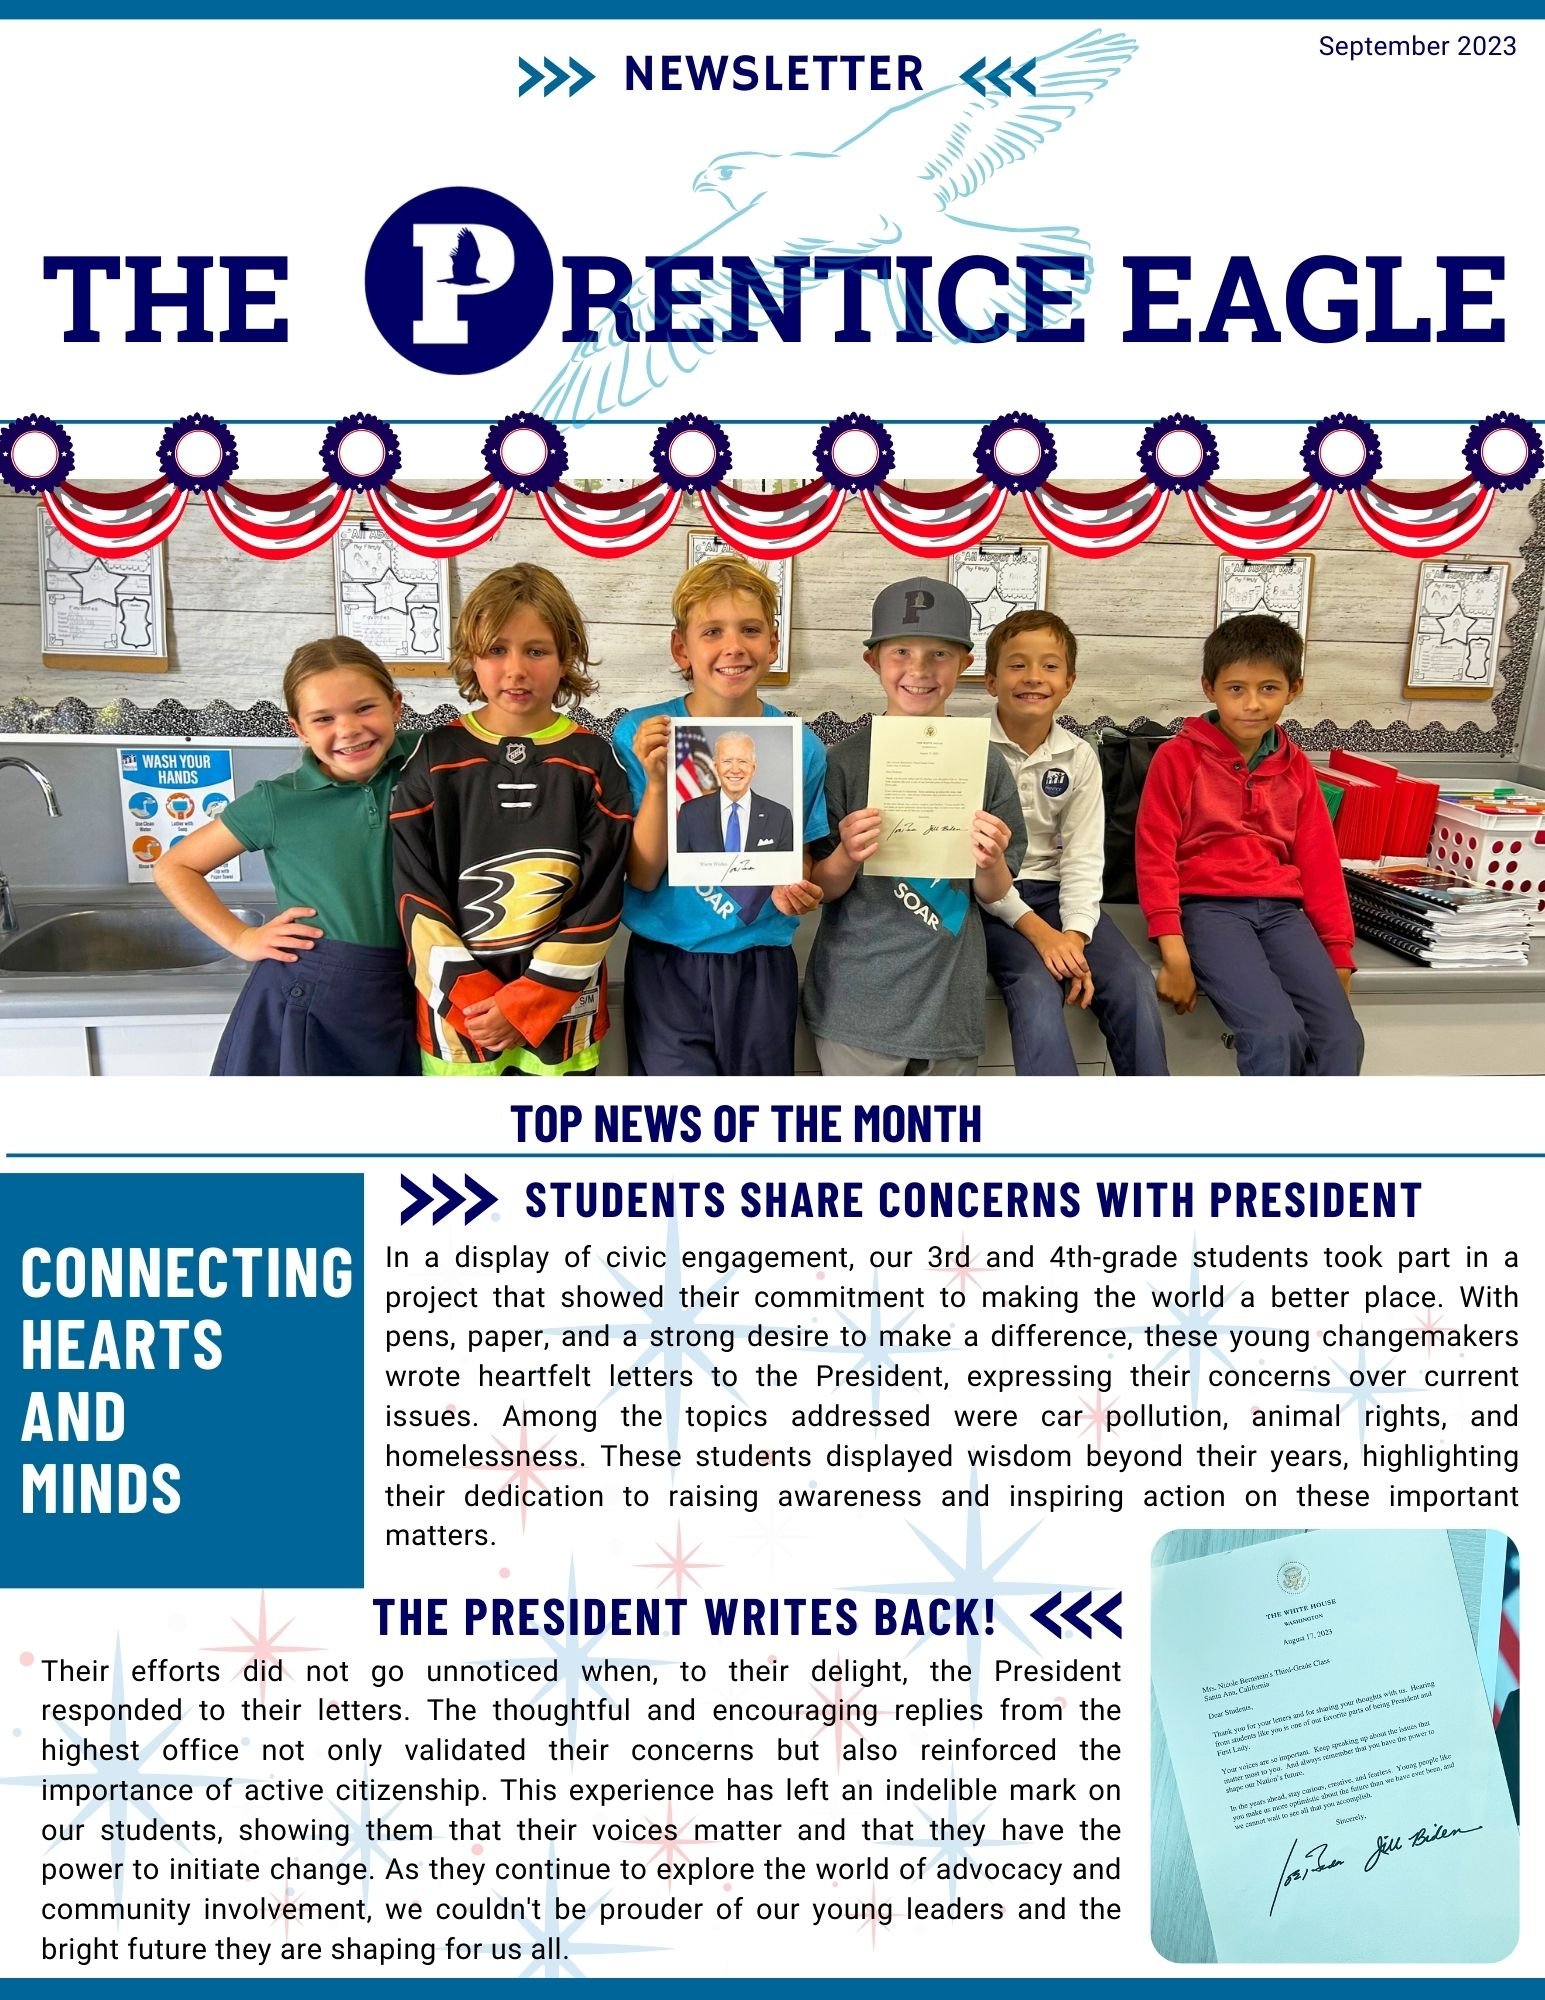 The Prentice Eagle Sept 23